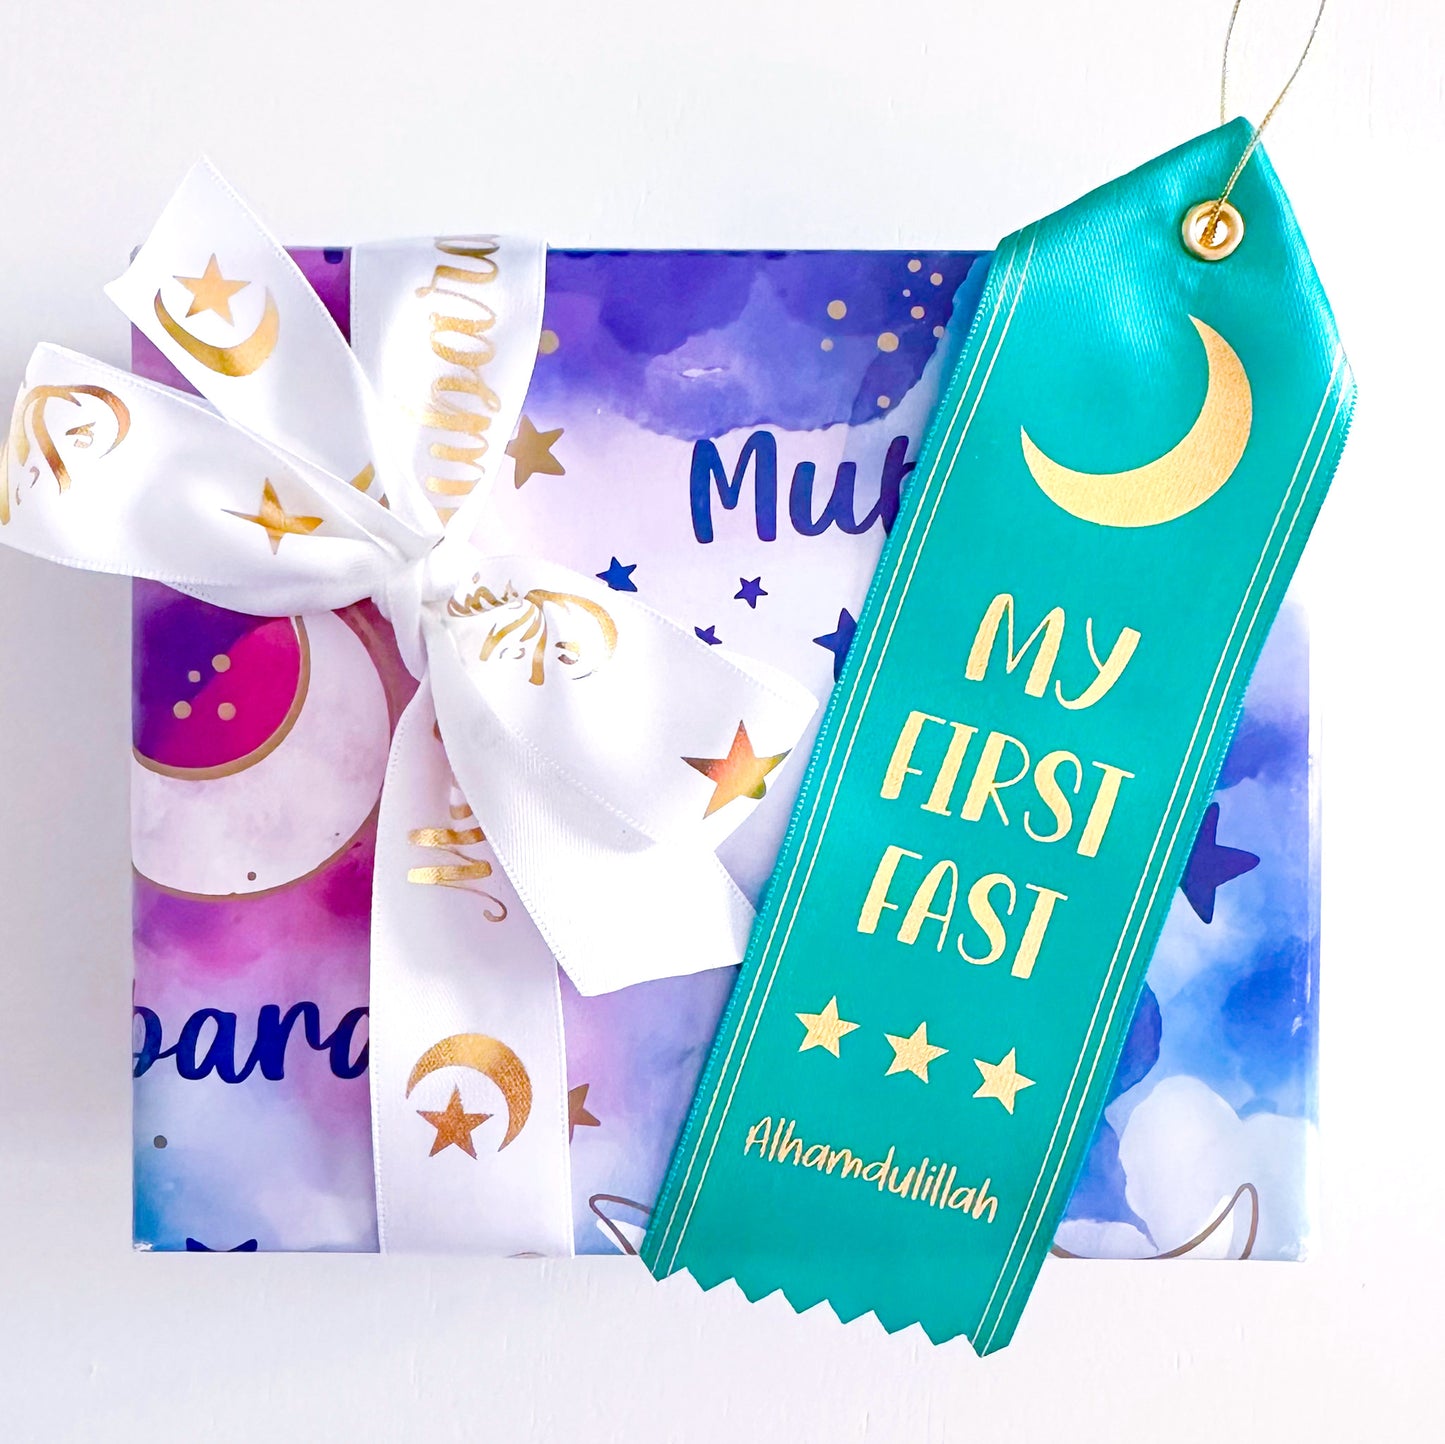 Ramadan award button